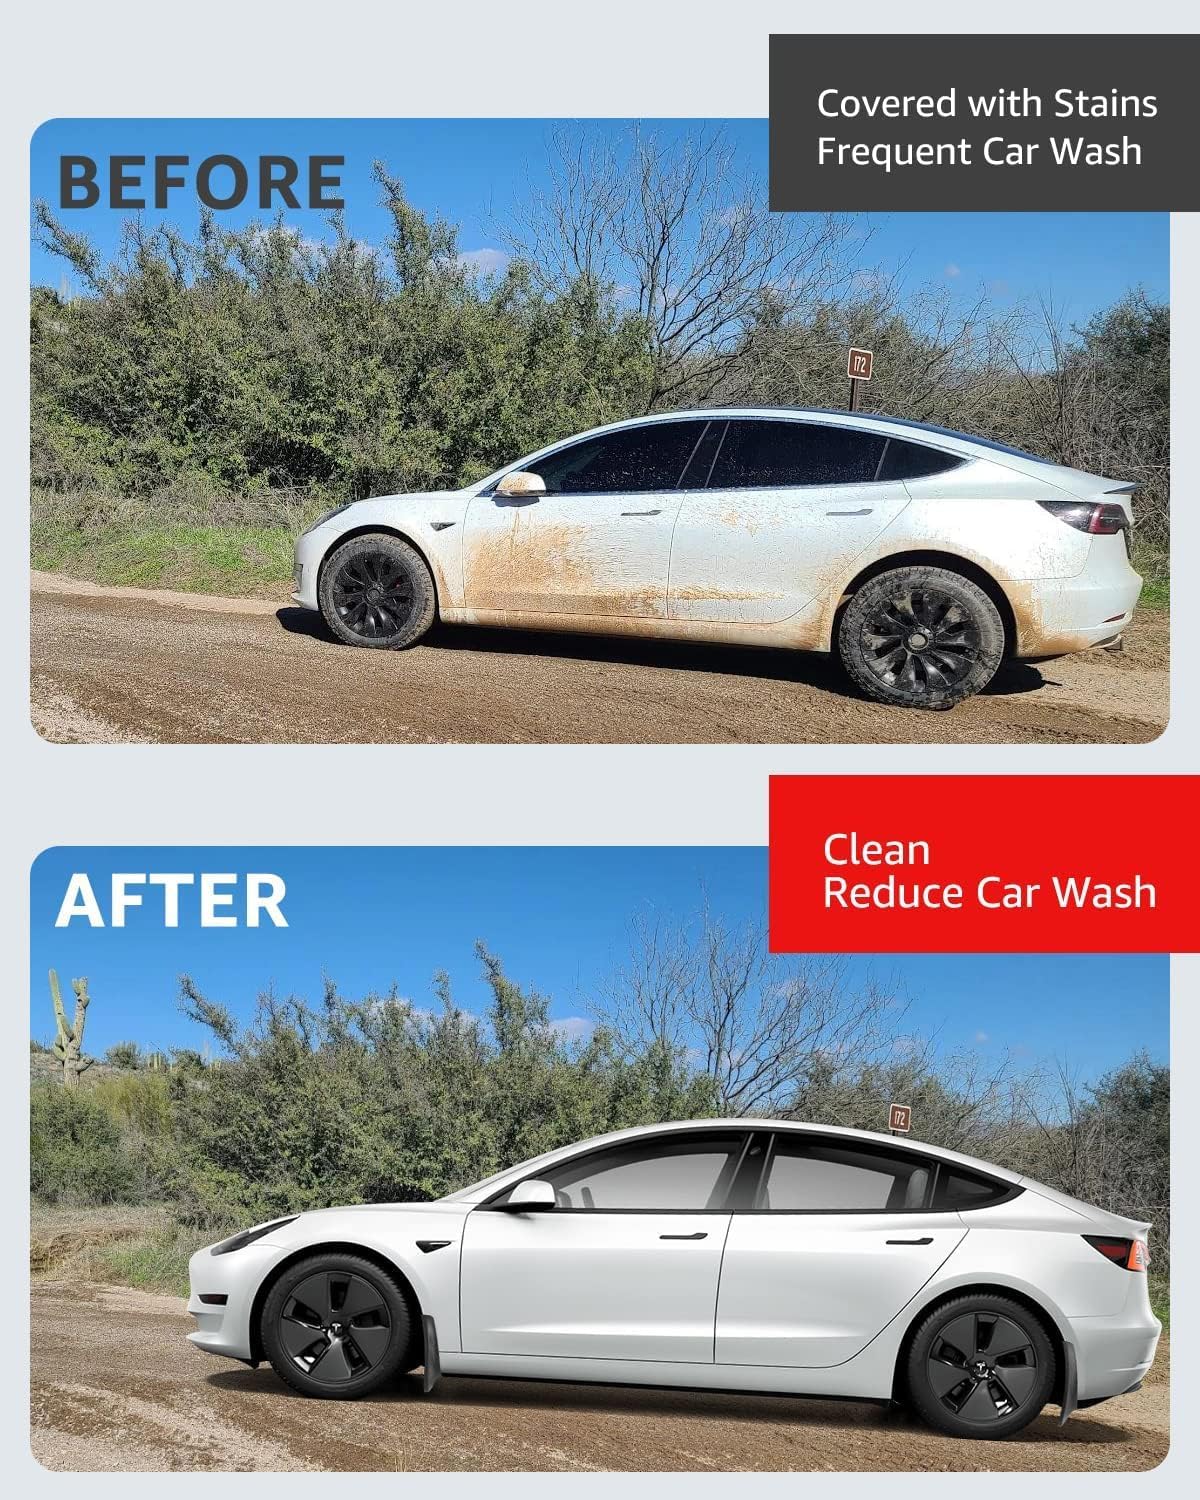 Mud Flaps Slash Guards for Tesla Model 3/Y